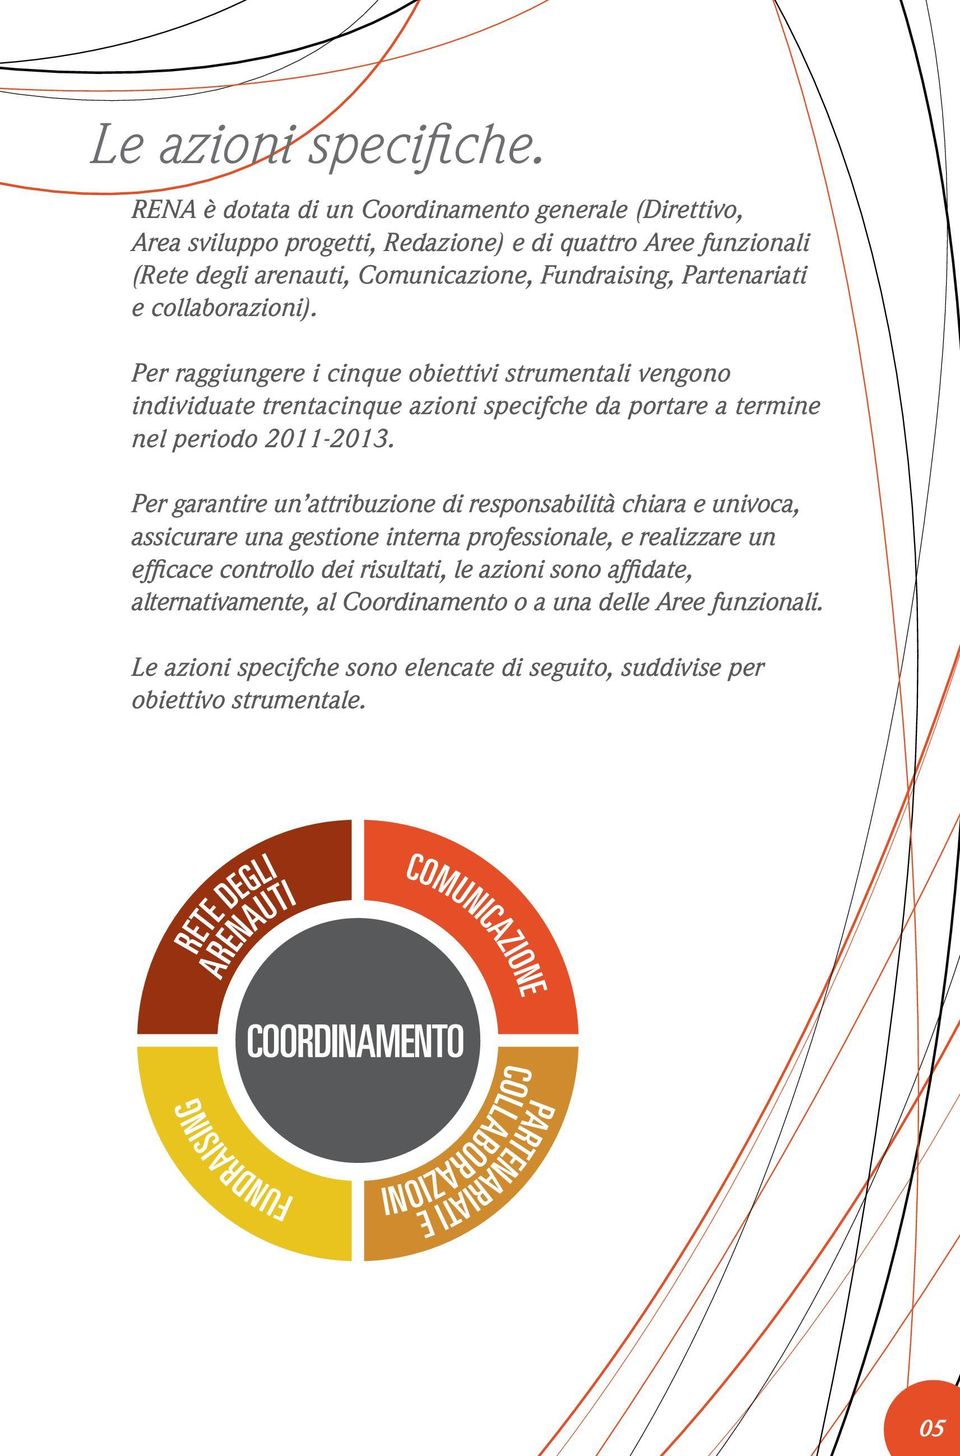 Partenariati e collaborazioni). Per raggiungere i cinque obiettivi strumentali vengono individuate trentacinque azioni specifche da portare a termine nel periodo 2011-2013.